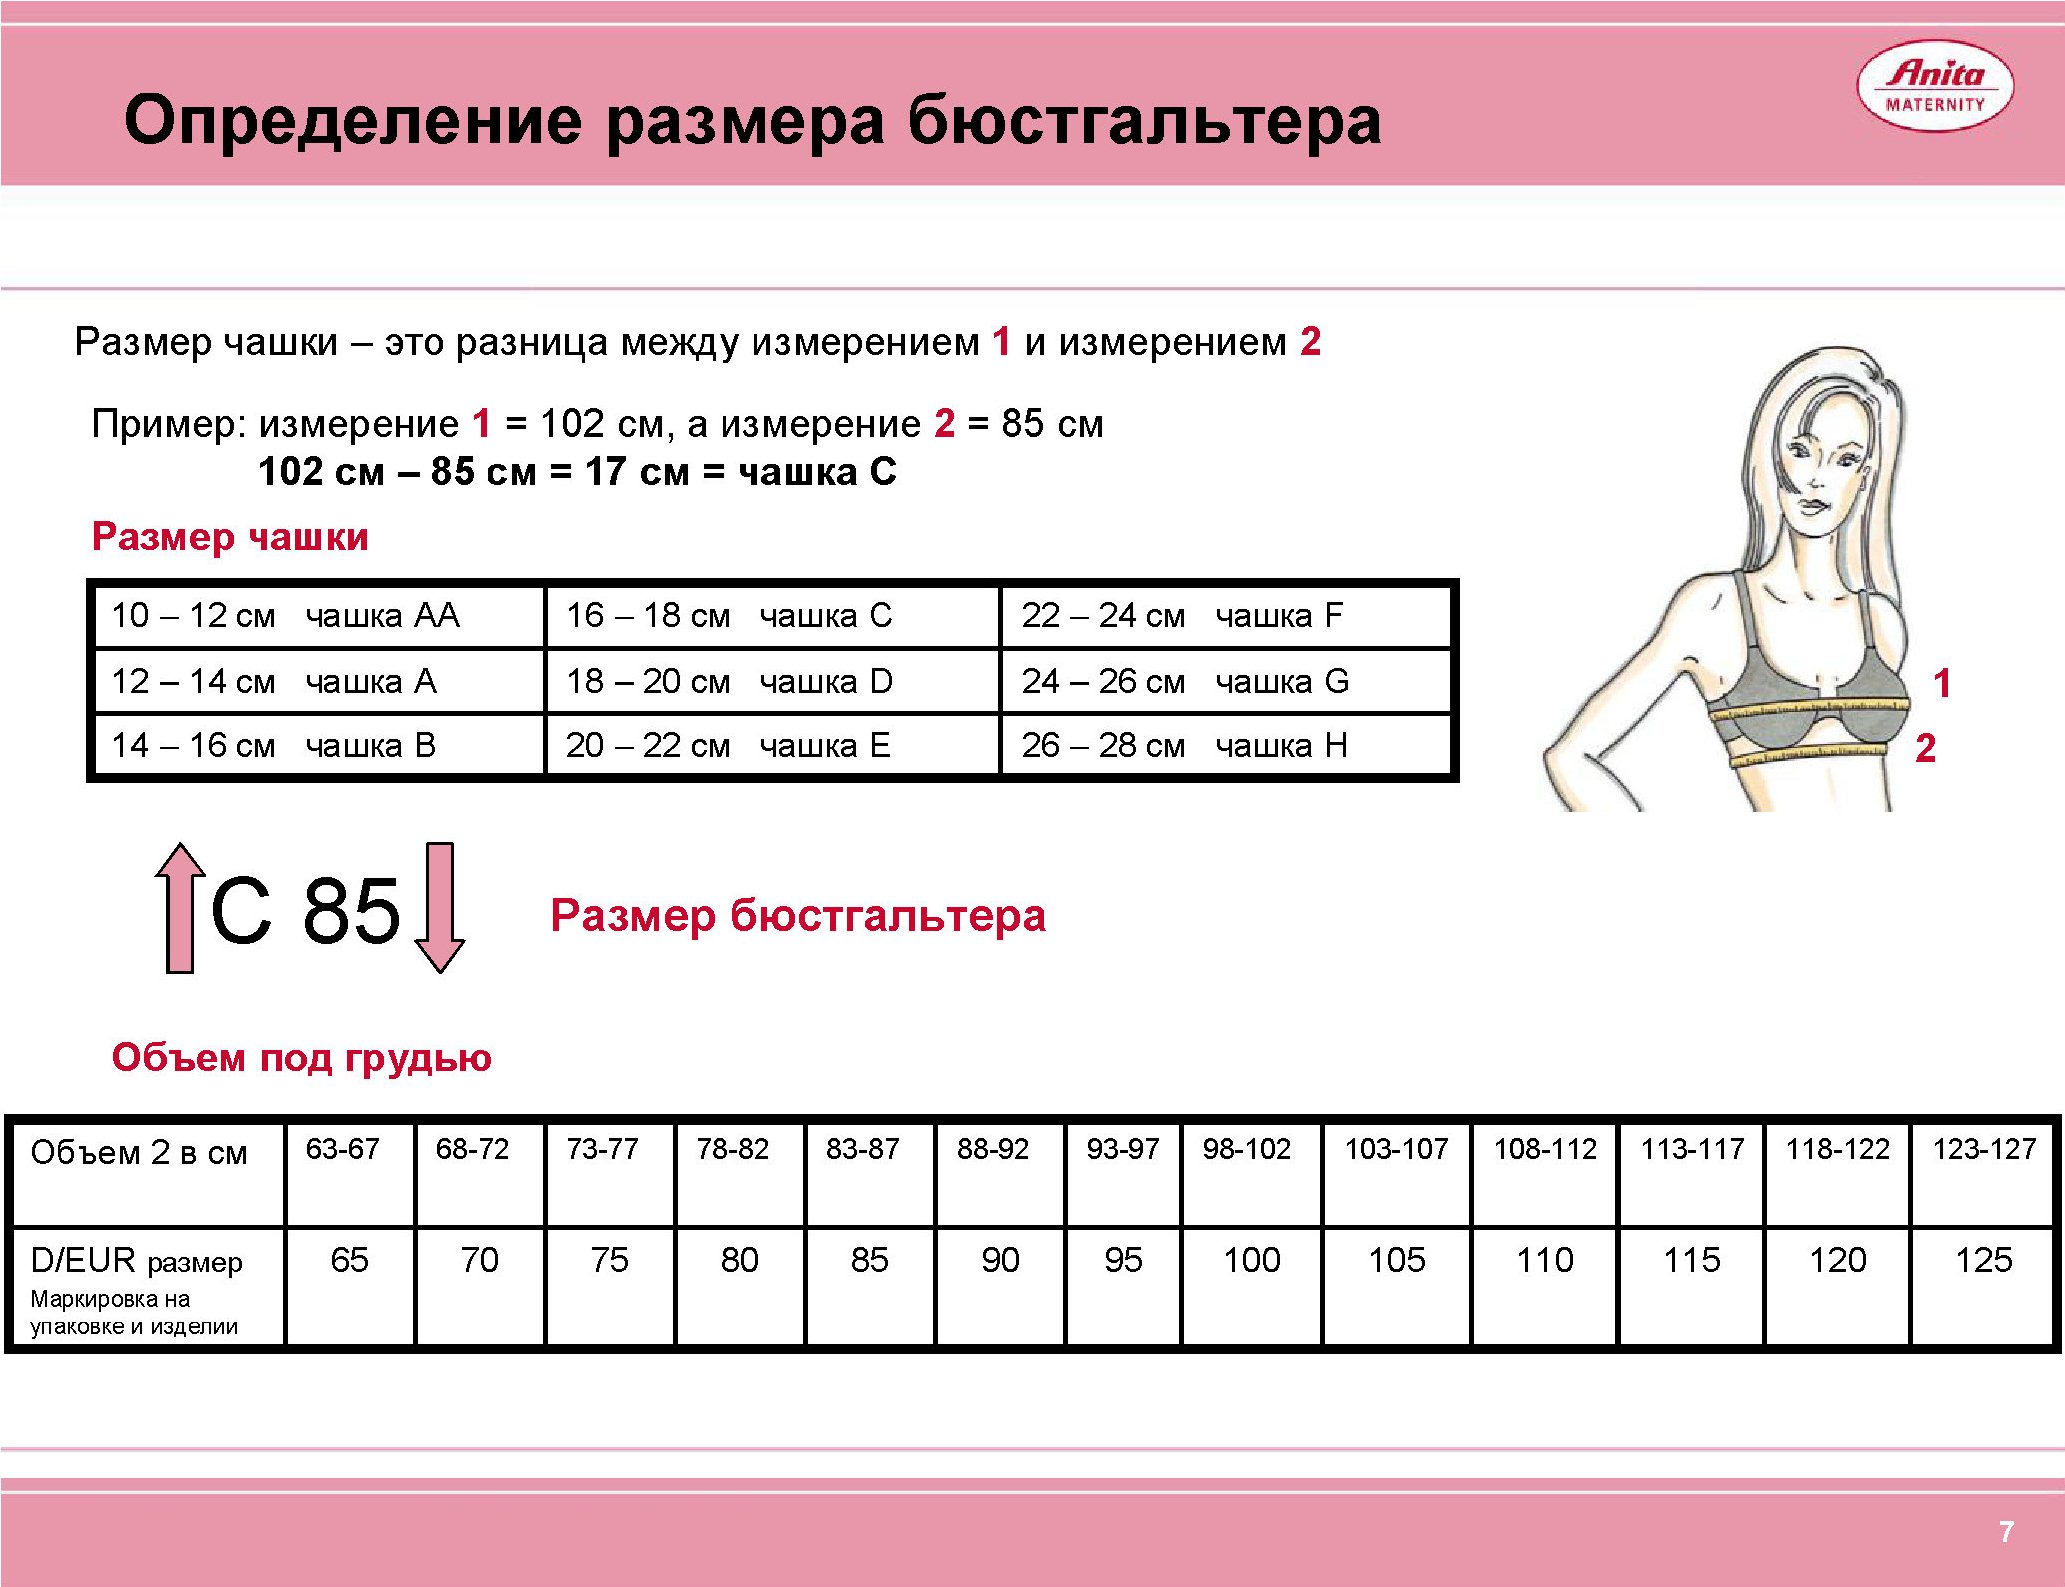 Как правильно определить размер бюстгальтера и чашки Таблица соответствия размеров лифчика по буквам и цифрам российских, европейских и китайских размеров